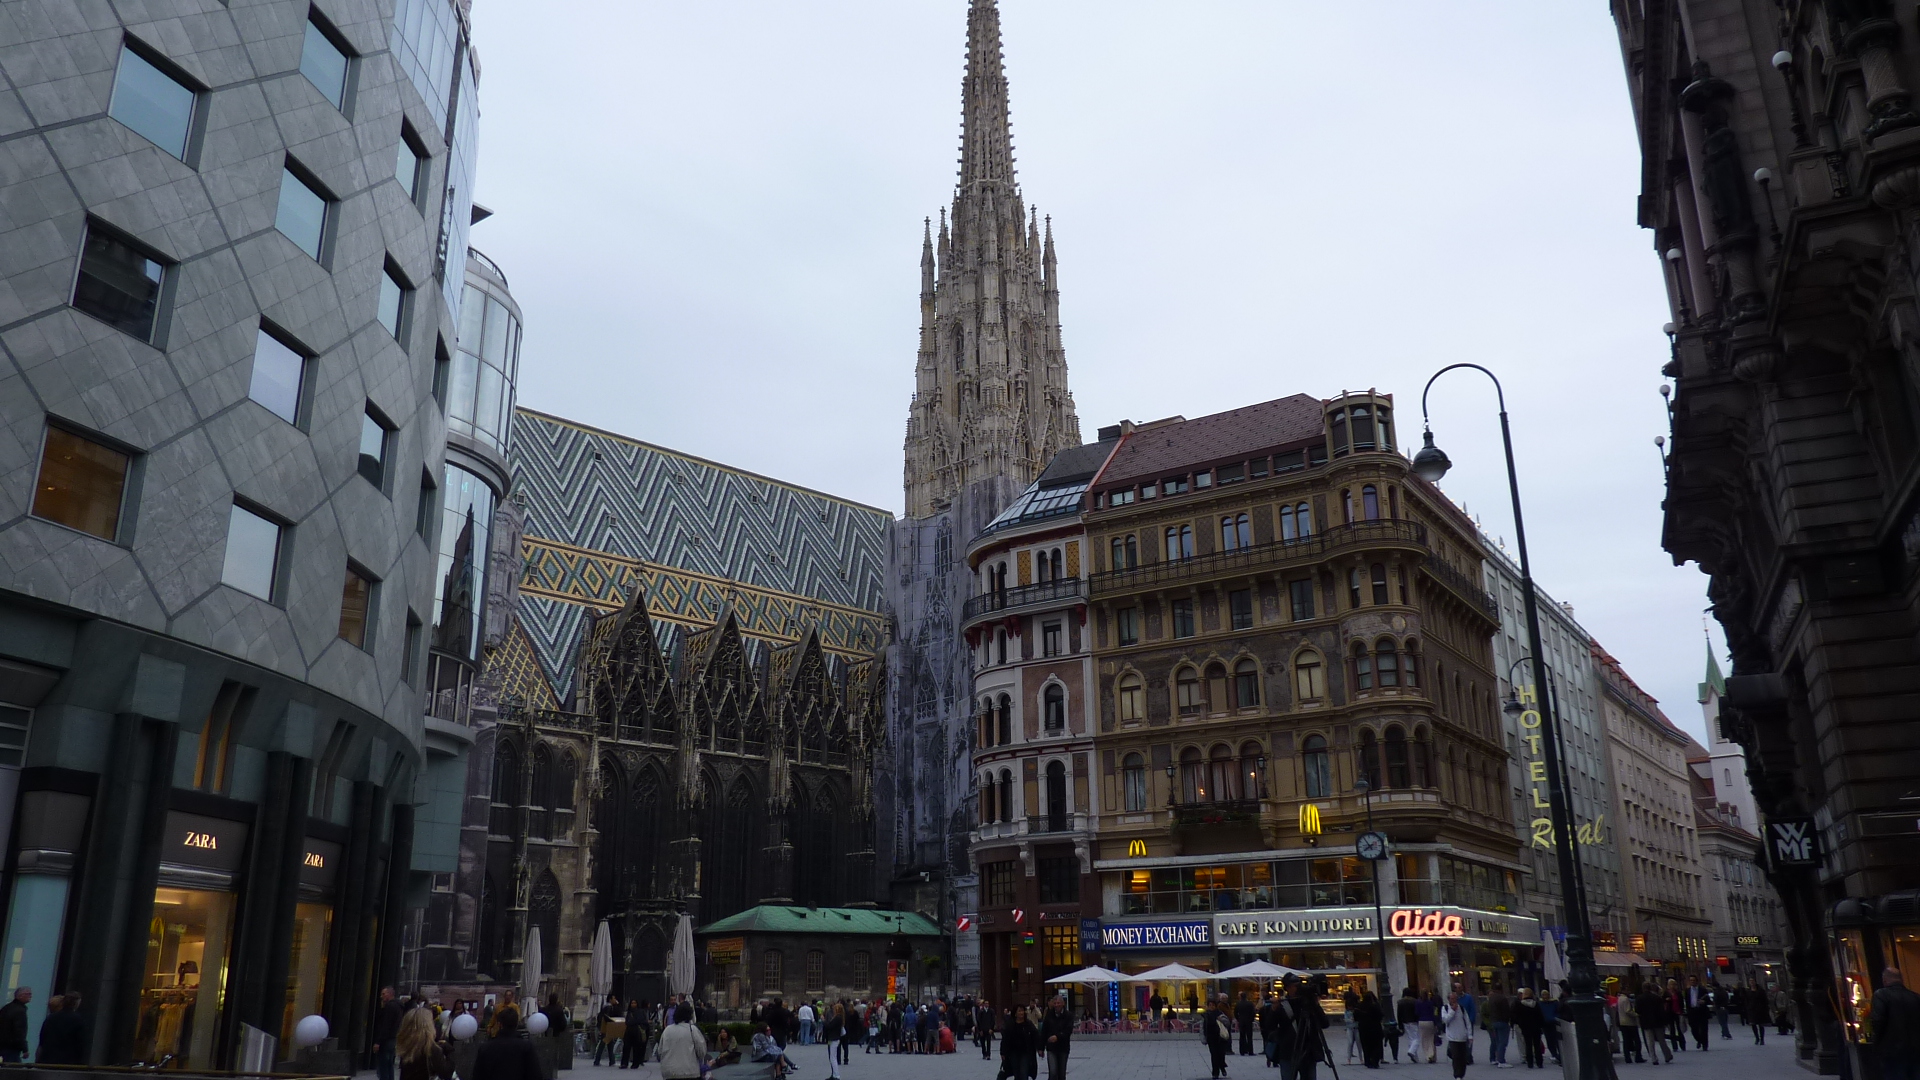 Nakupování ve Vídni či Drážďanech. Pohoda v centru či na okraji města